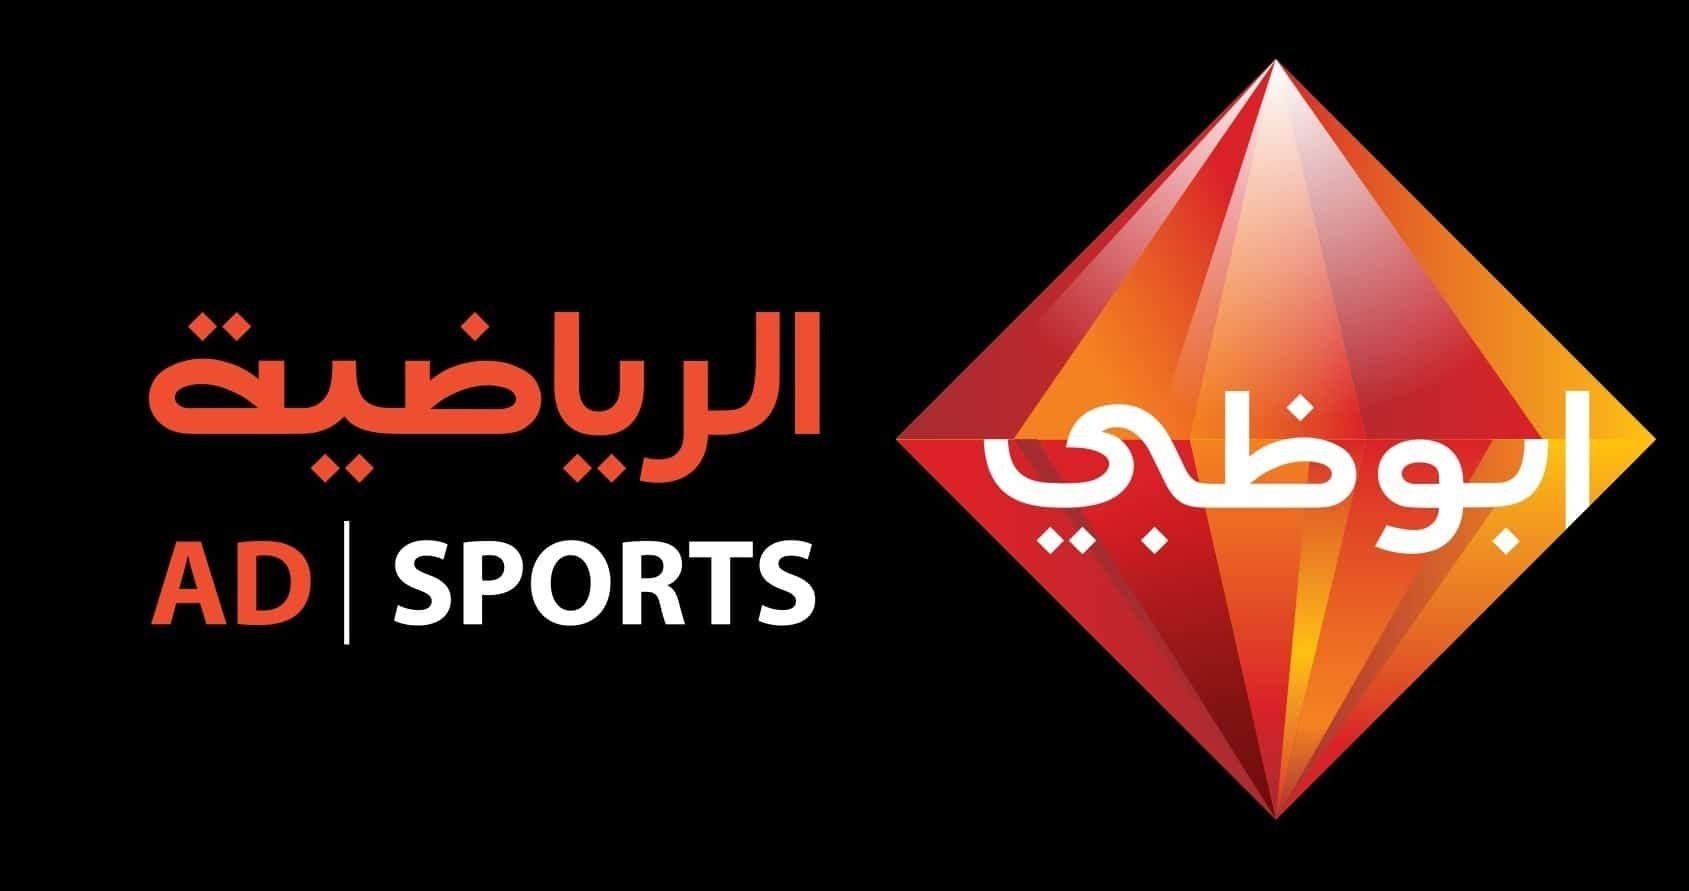   شبكة قنوات أبو ظبى الرياضية تعلن عن إصدارها قناة خاصة لتغطية لقاء السوبر المصرى